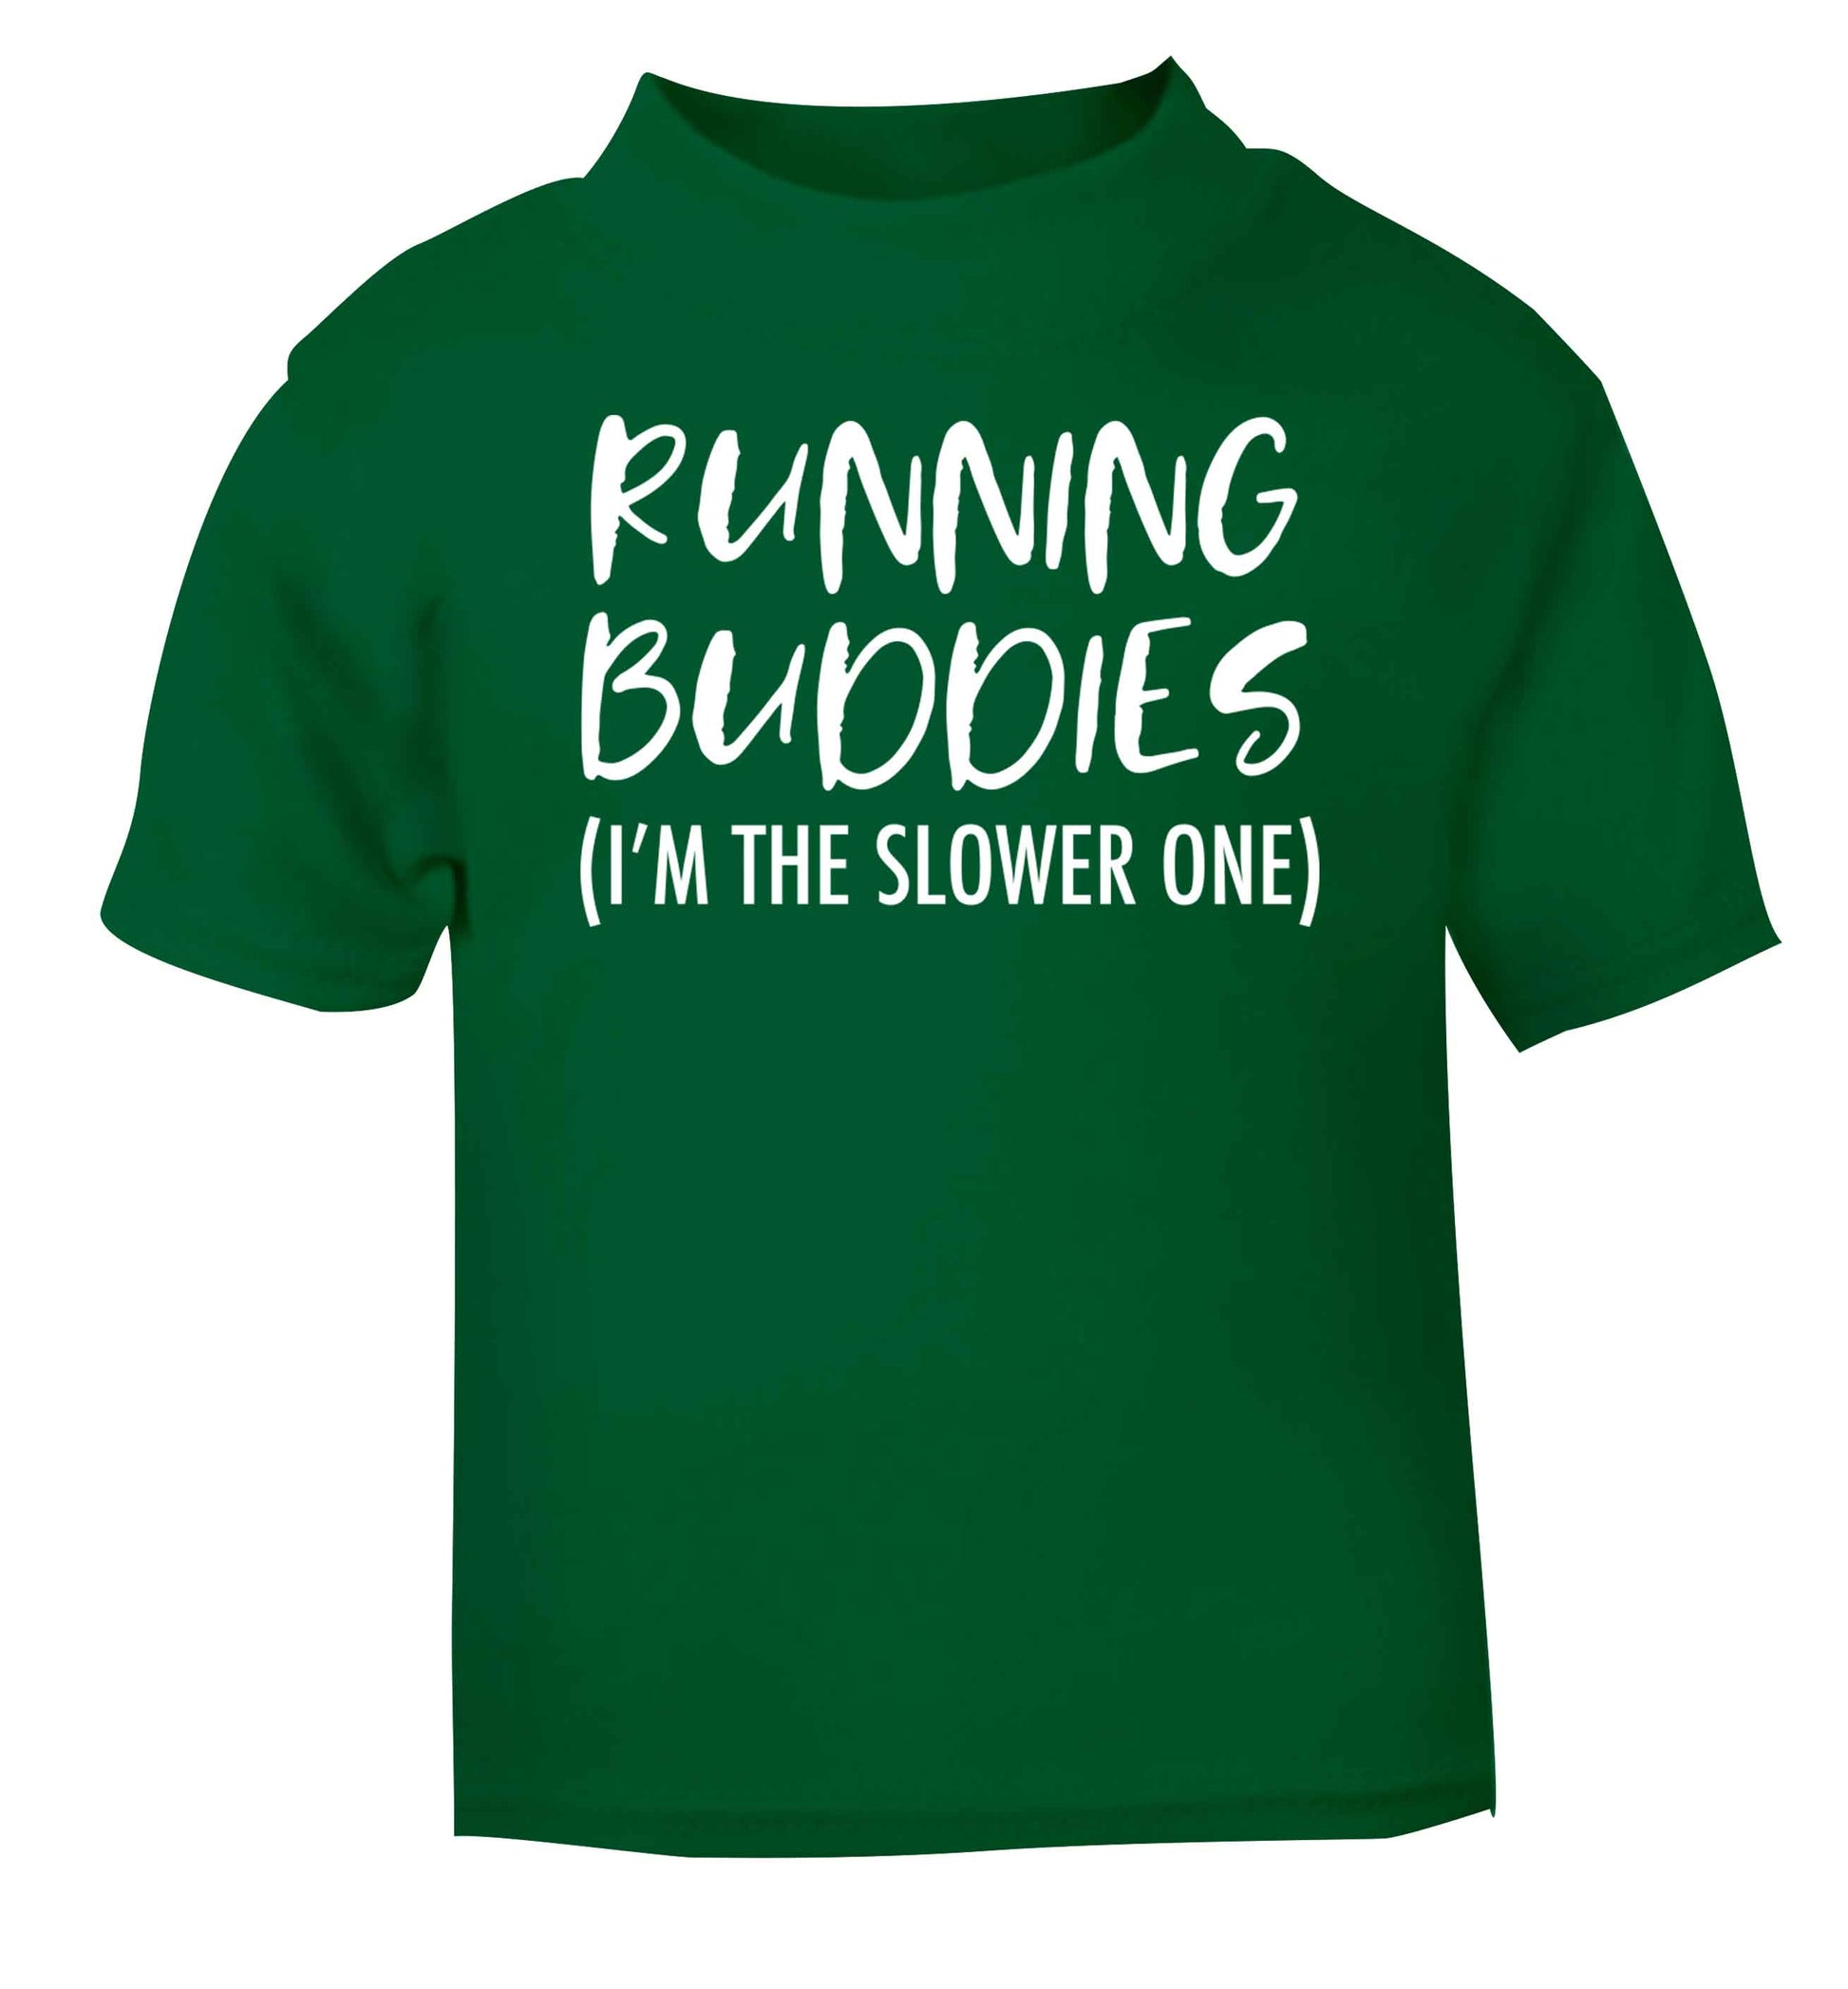 Running buddies (I'm the slower one) green baby toddler Tshirt 2 Years